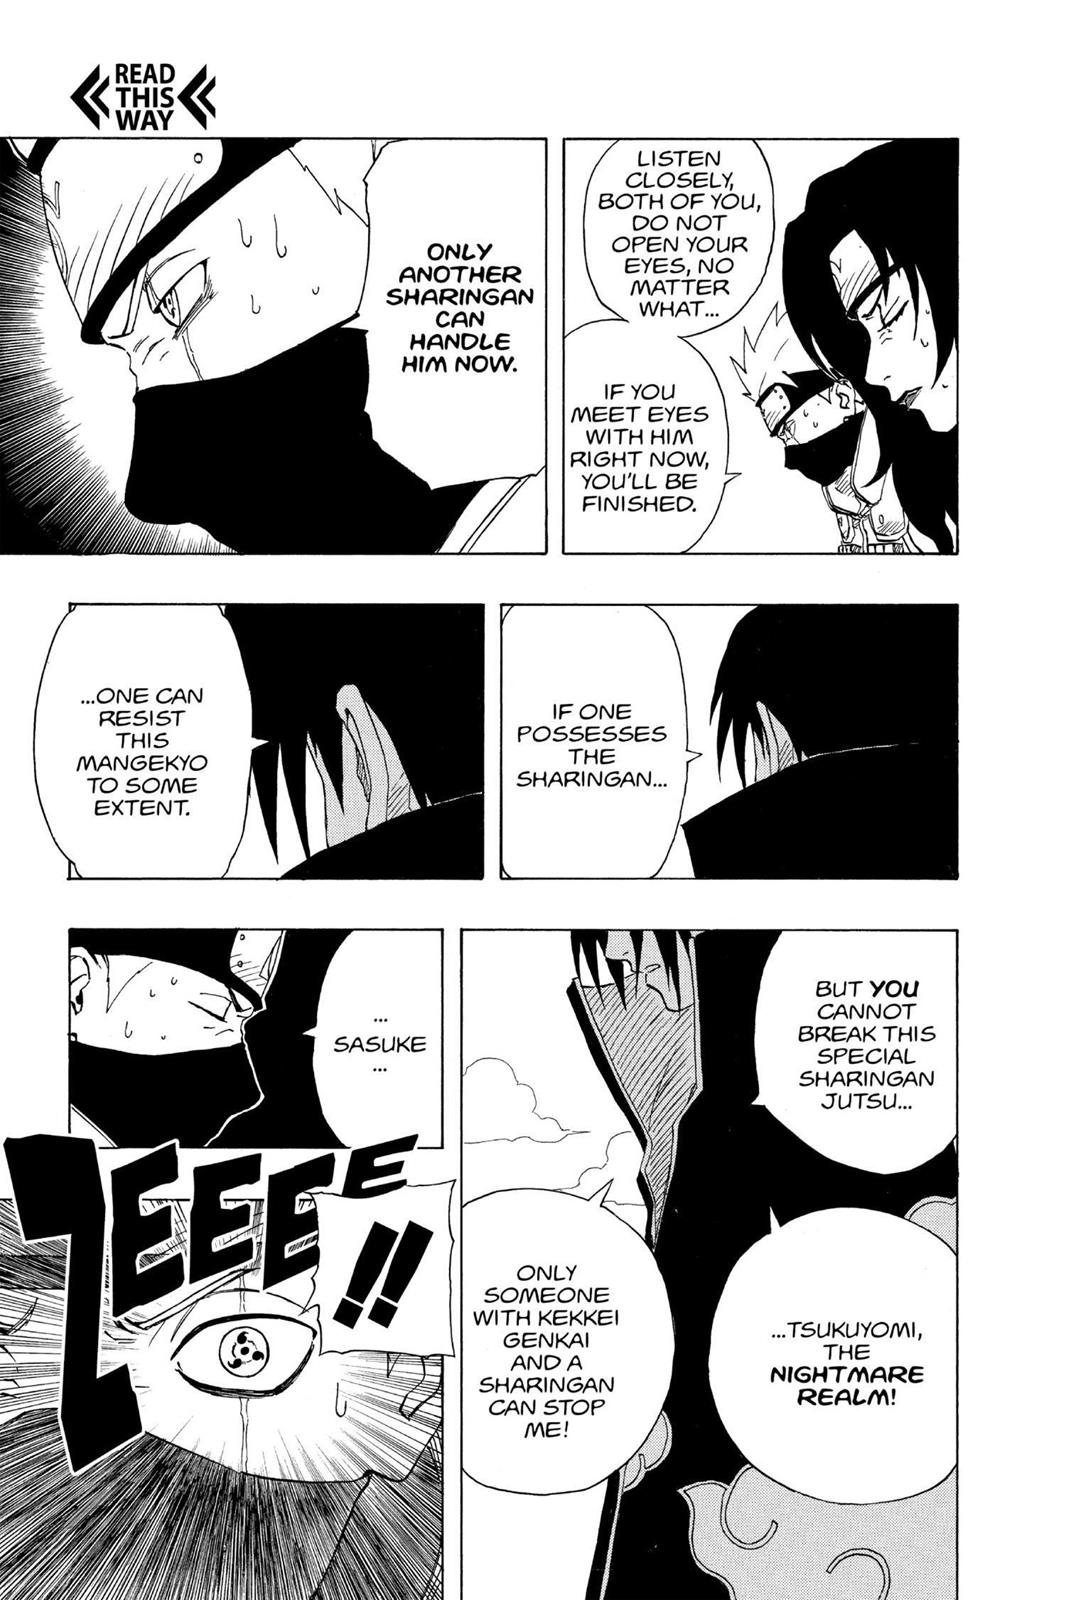 Kāpēc Itachi nenogalināja Sasuke?